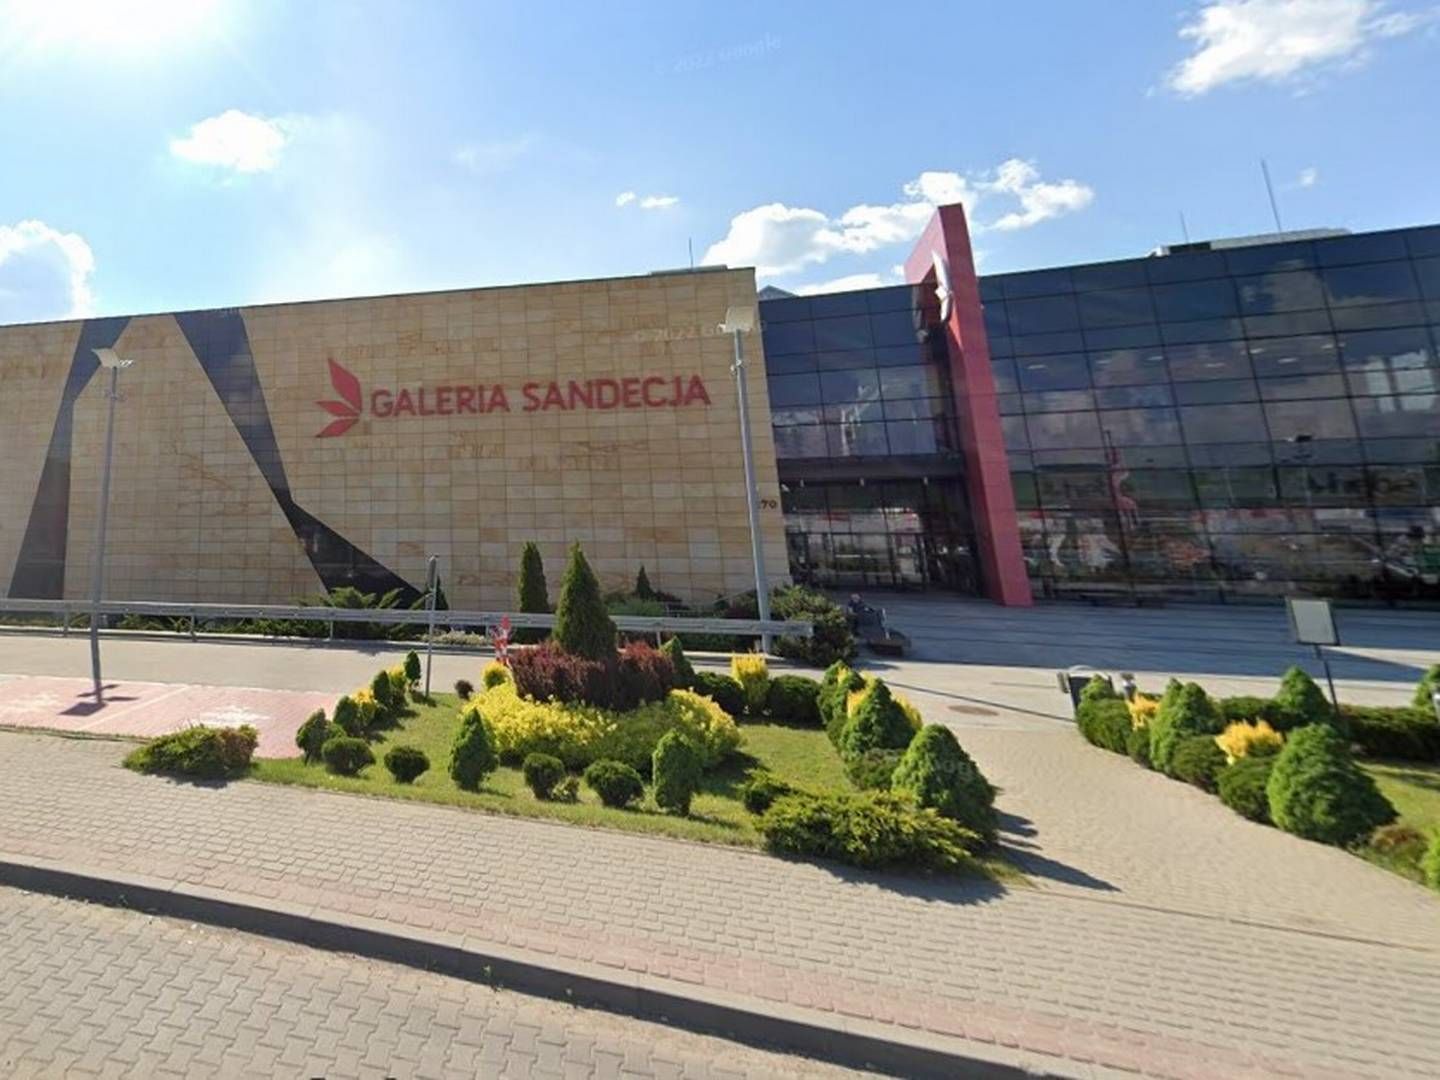 Shoppingcentret Galeria Sandecja ligger i det sydlige Polen. | Foto: Google Map